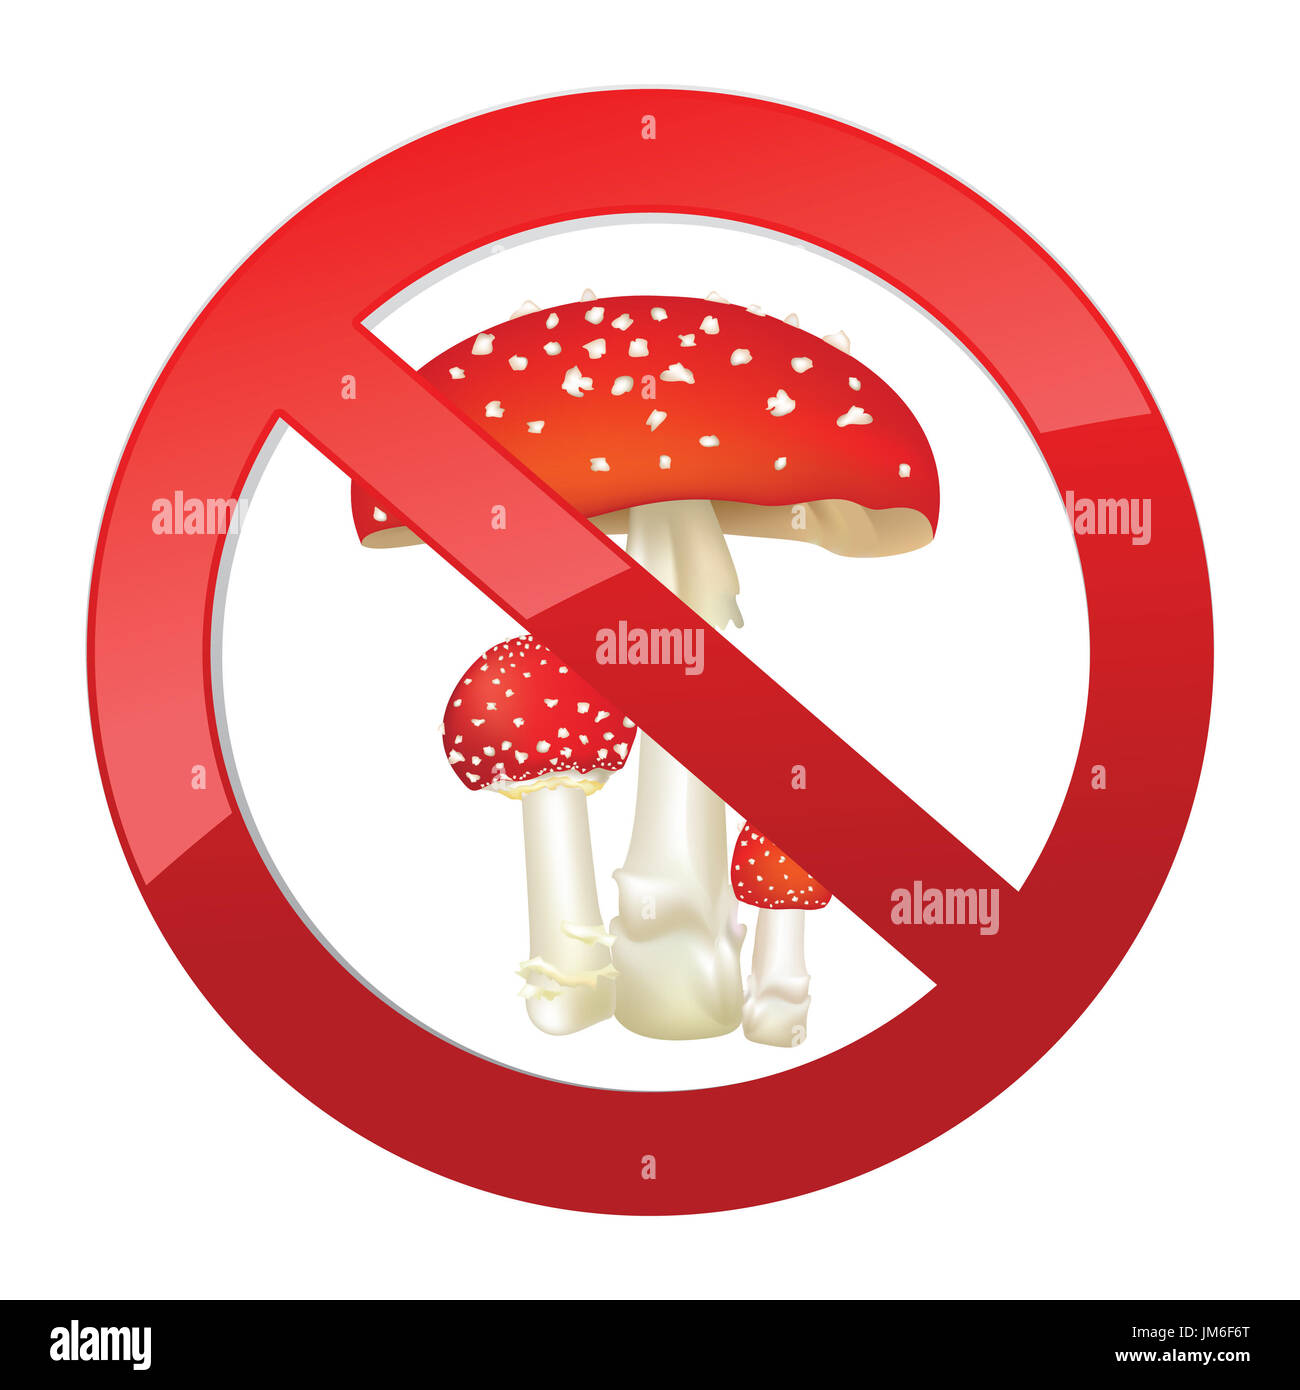 Знак нельзя собирать грибы. Знак ядовитые грибы. Знак ядовитые грибы и ягоды. Знак опасно ядовитые грибы. Ядовитые грибы не трогать.